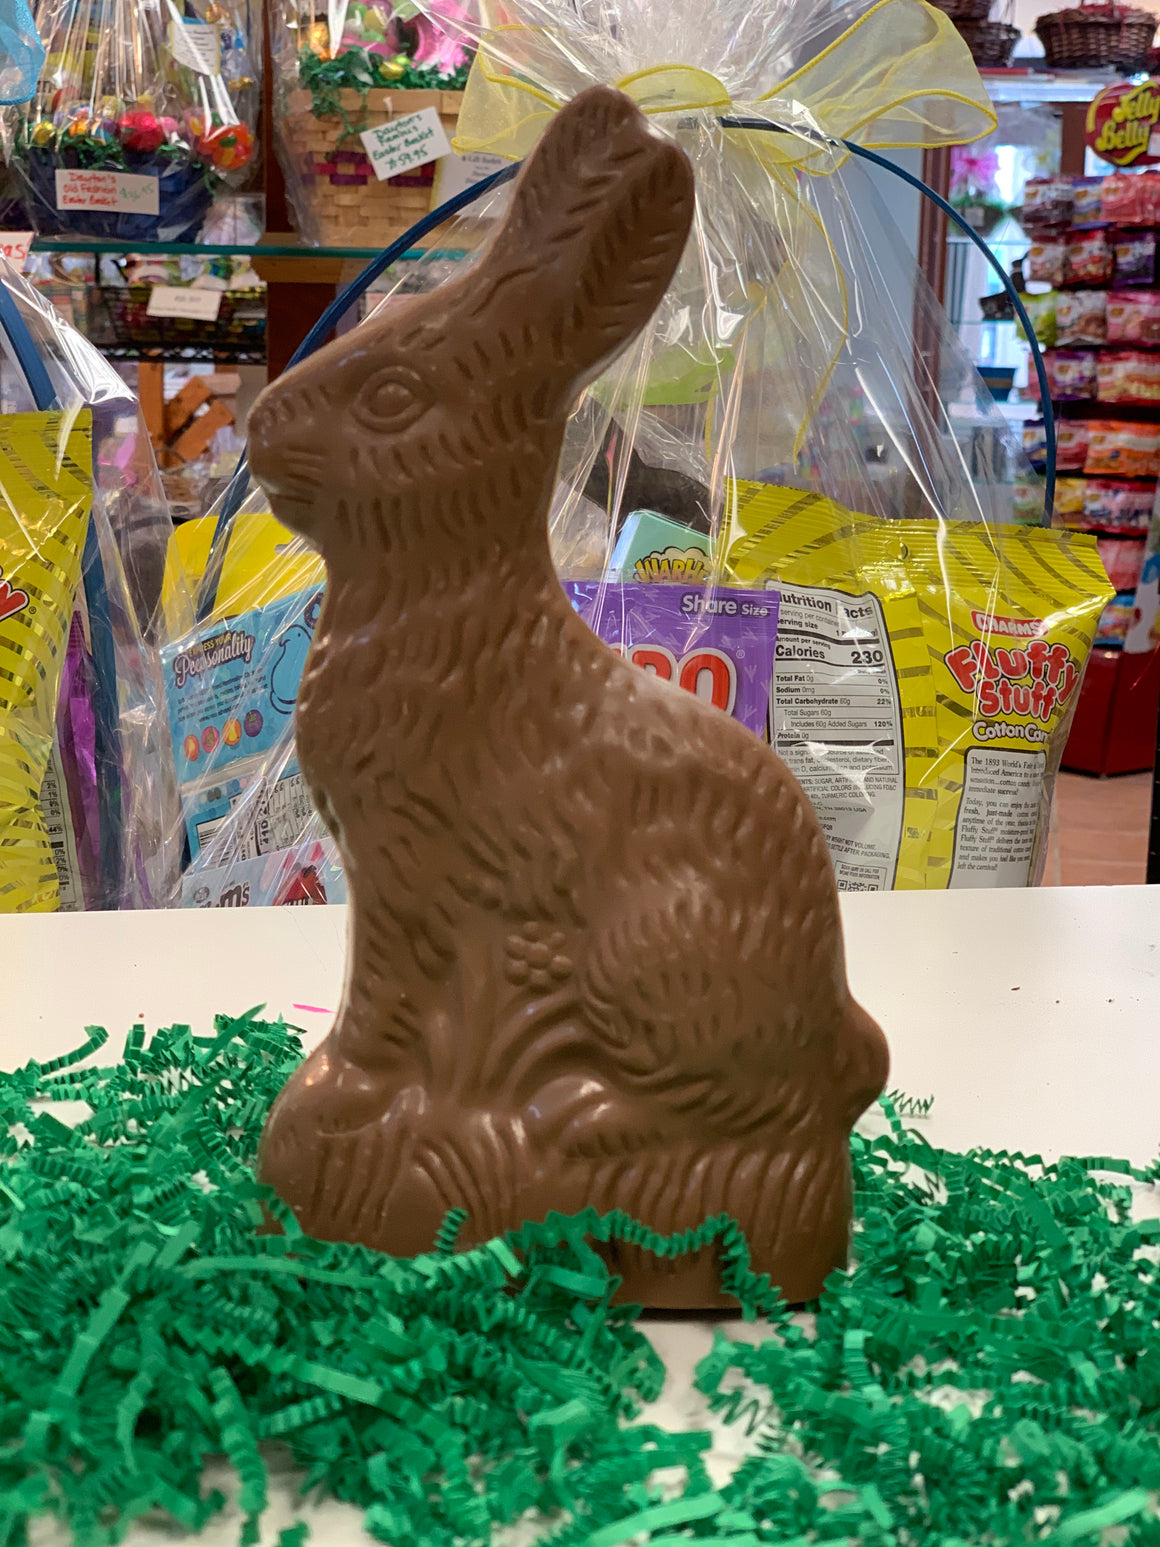 Big Ear Bunny - Dayton Homemade Chocolates & Gift Baskets